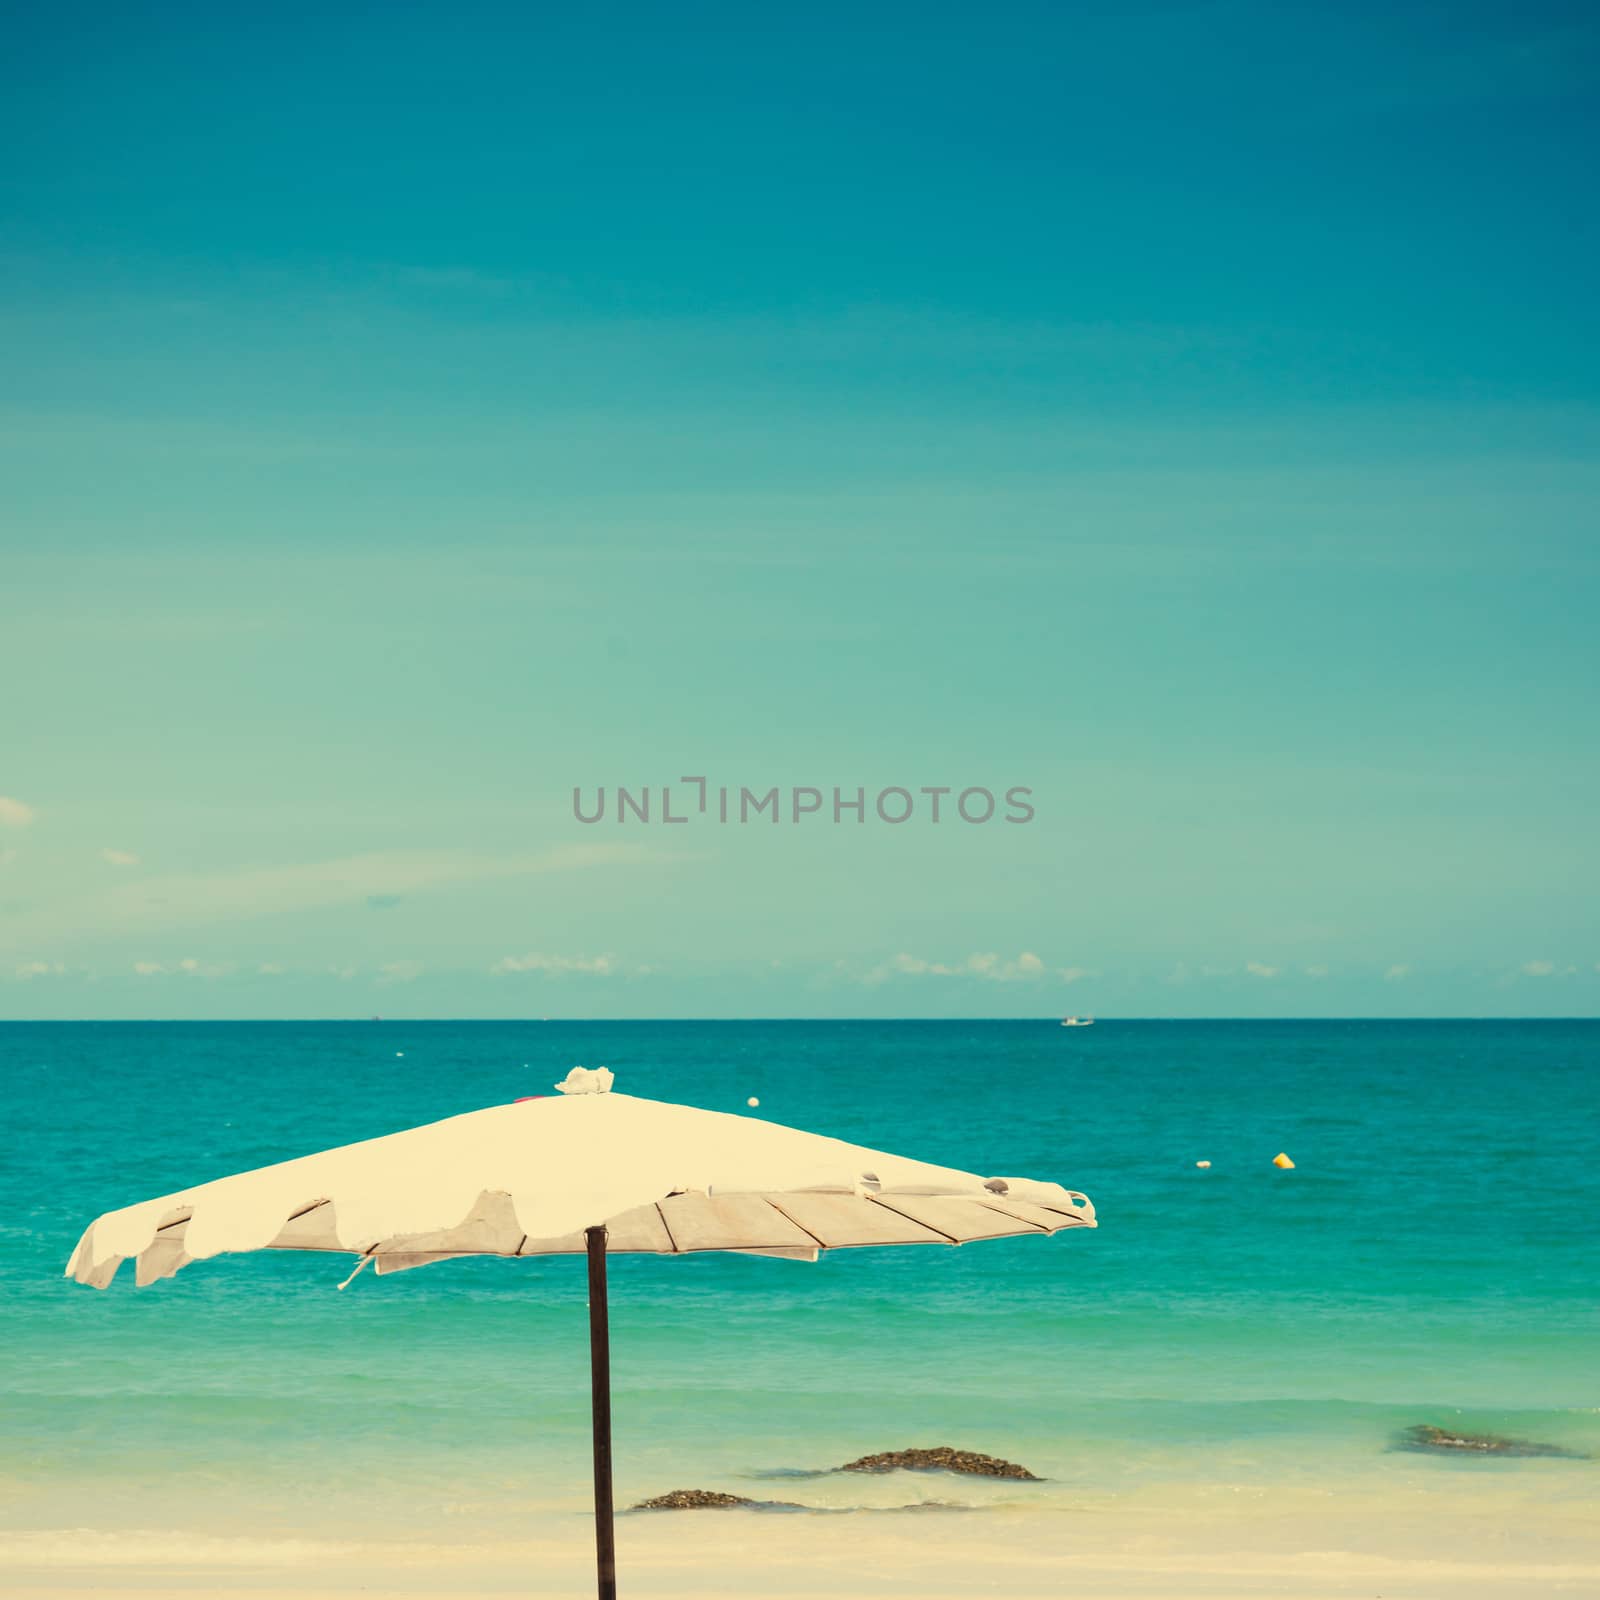 Vintage umbrella on sand beach. 